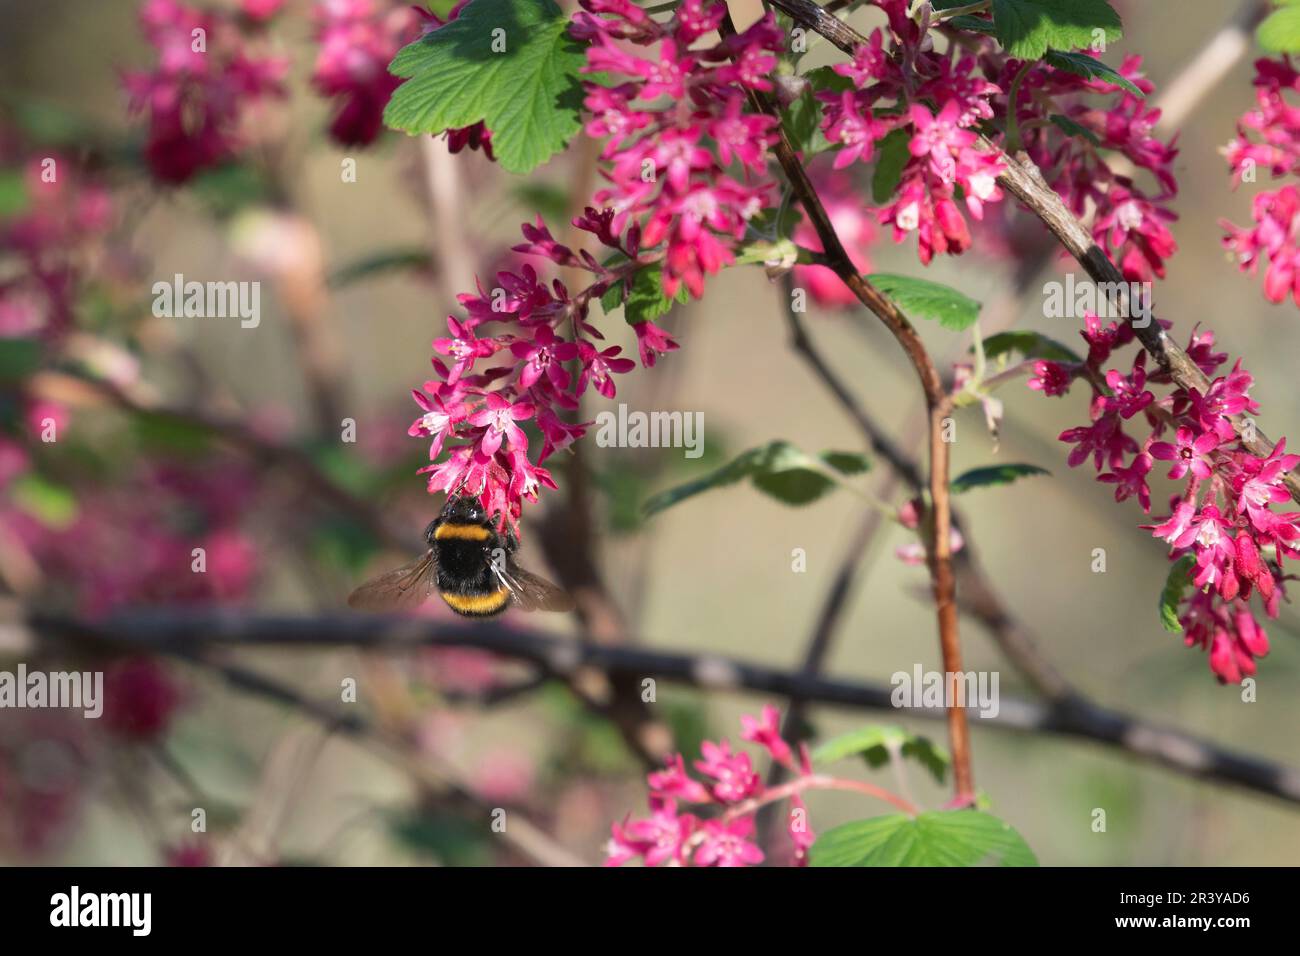 Un Bumblebee dalla coda bianca (Bombus lucorum) Foraging sui fiori rosa-rossiccio di un bush di ribes rosso-fiorito (Ribes Sanguineum) in aprile Foto Stock